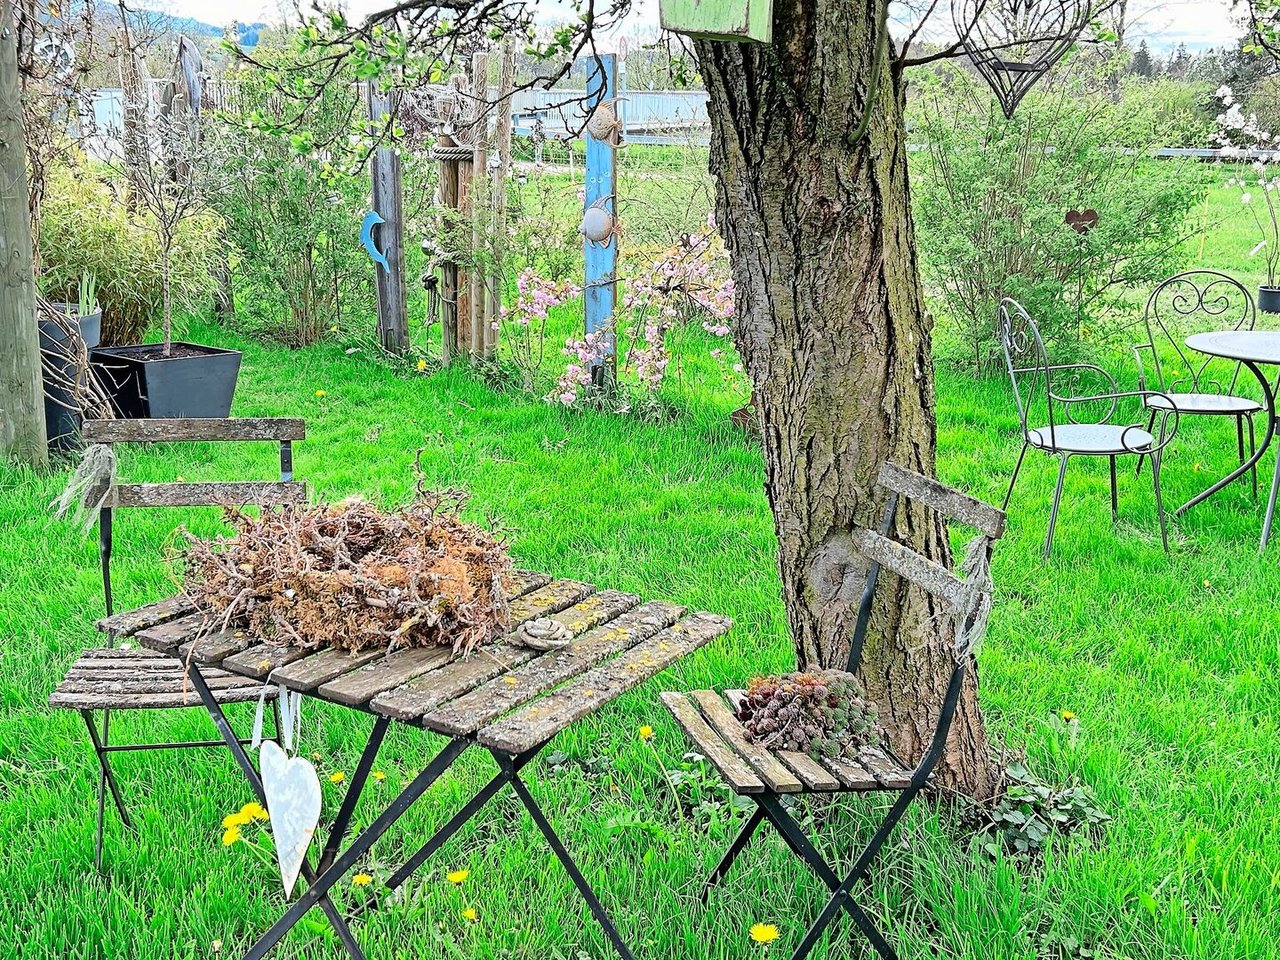 Manuela Manser Iiebt es, im Garten zu arbeiten. Dort finden sich neben einem Pavillon und einem Teich auch verschiedene romantische Sitzplätzchen.